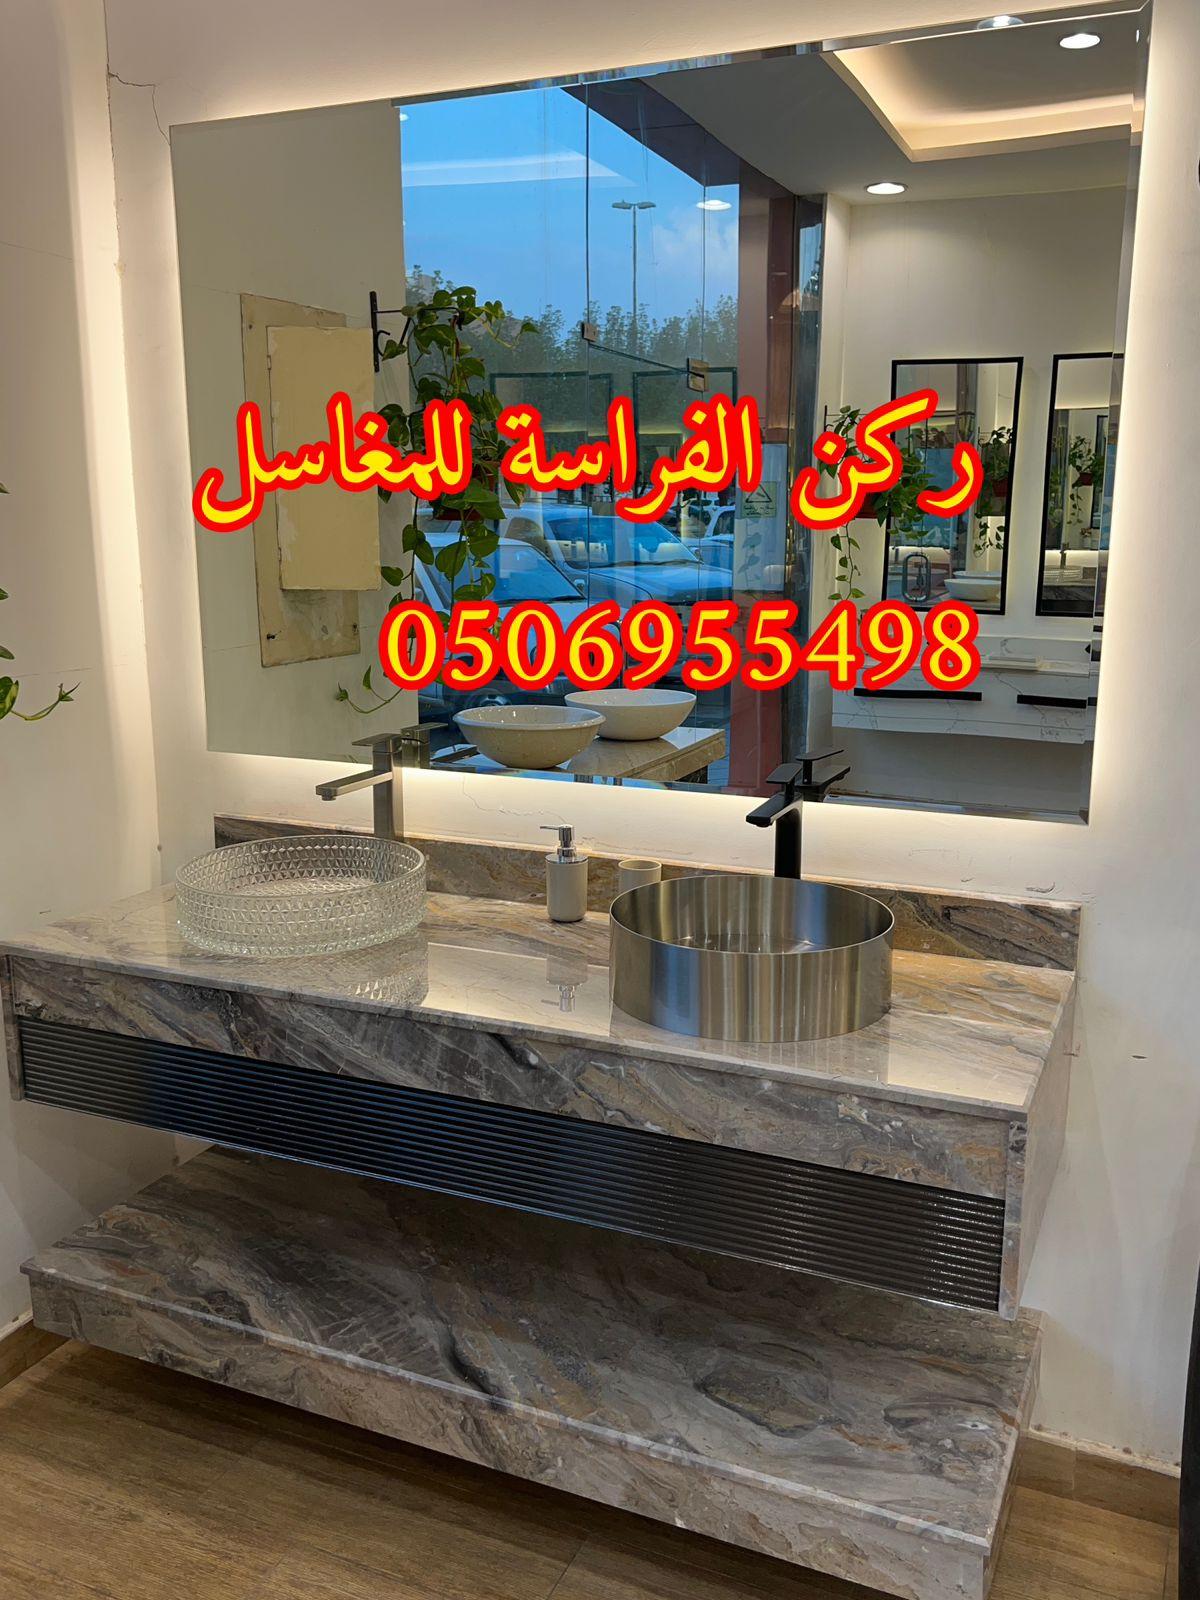 تفصيل ديكورات مغاسل حمامات رخام في الرياض,0506955498 399632616